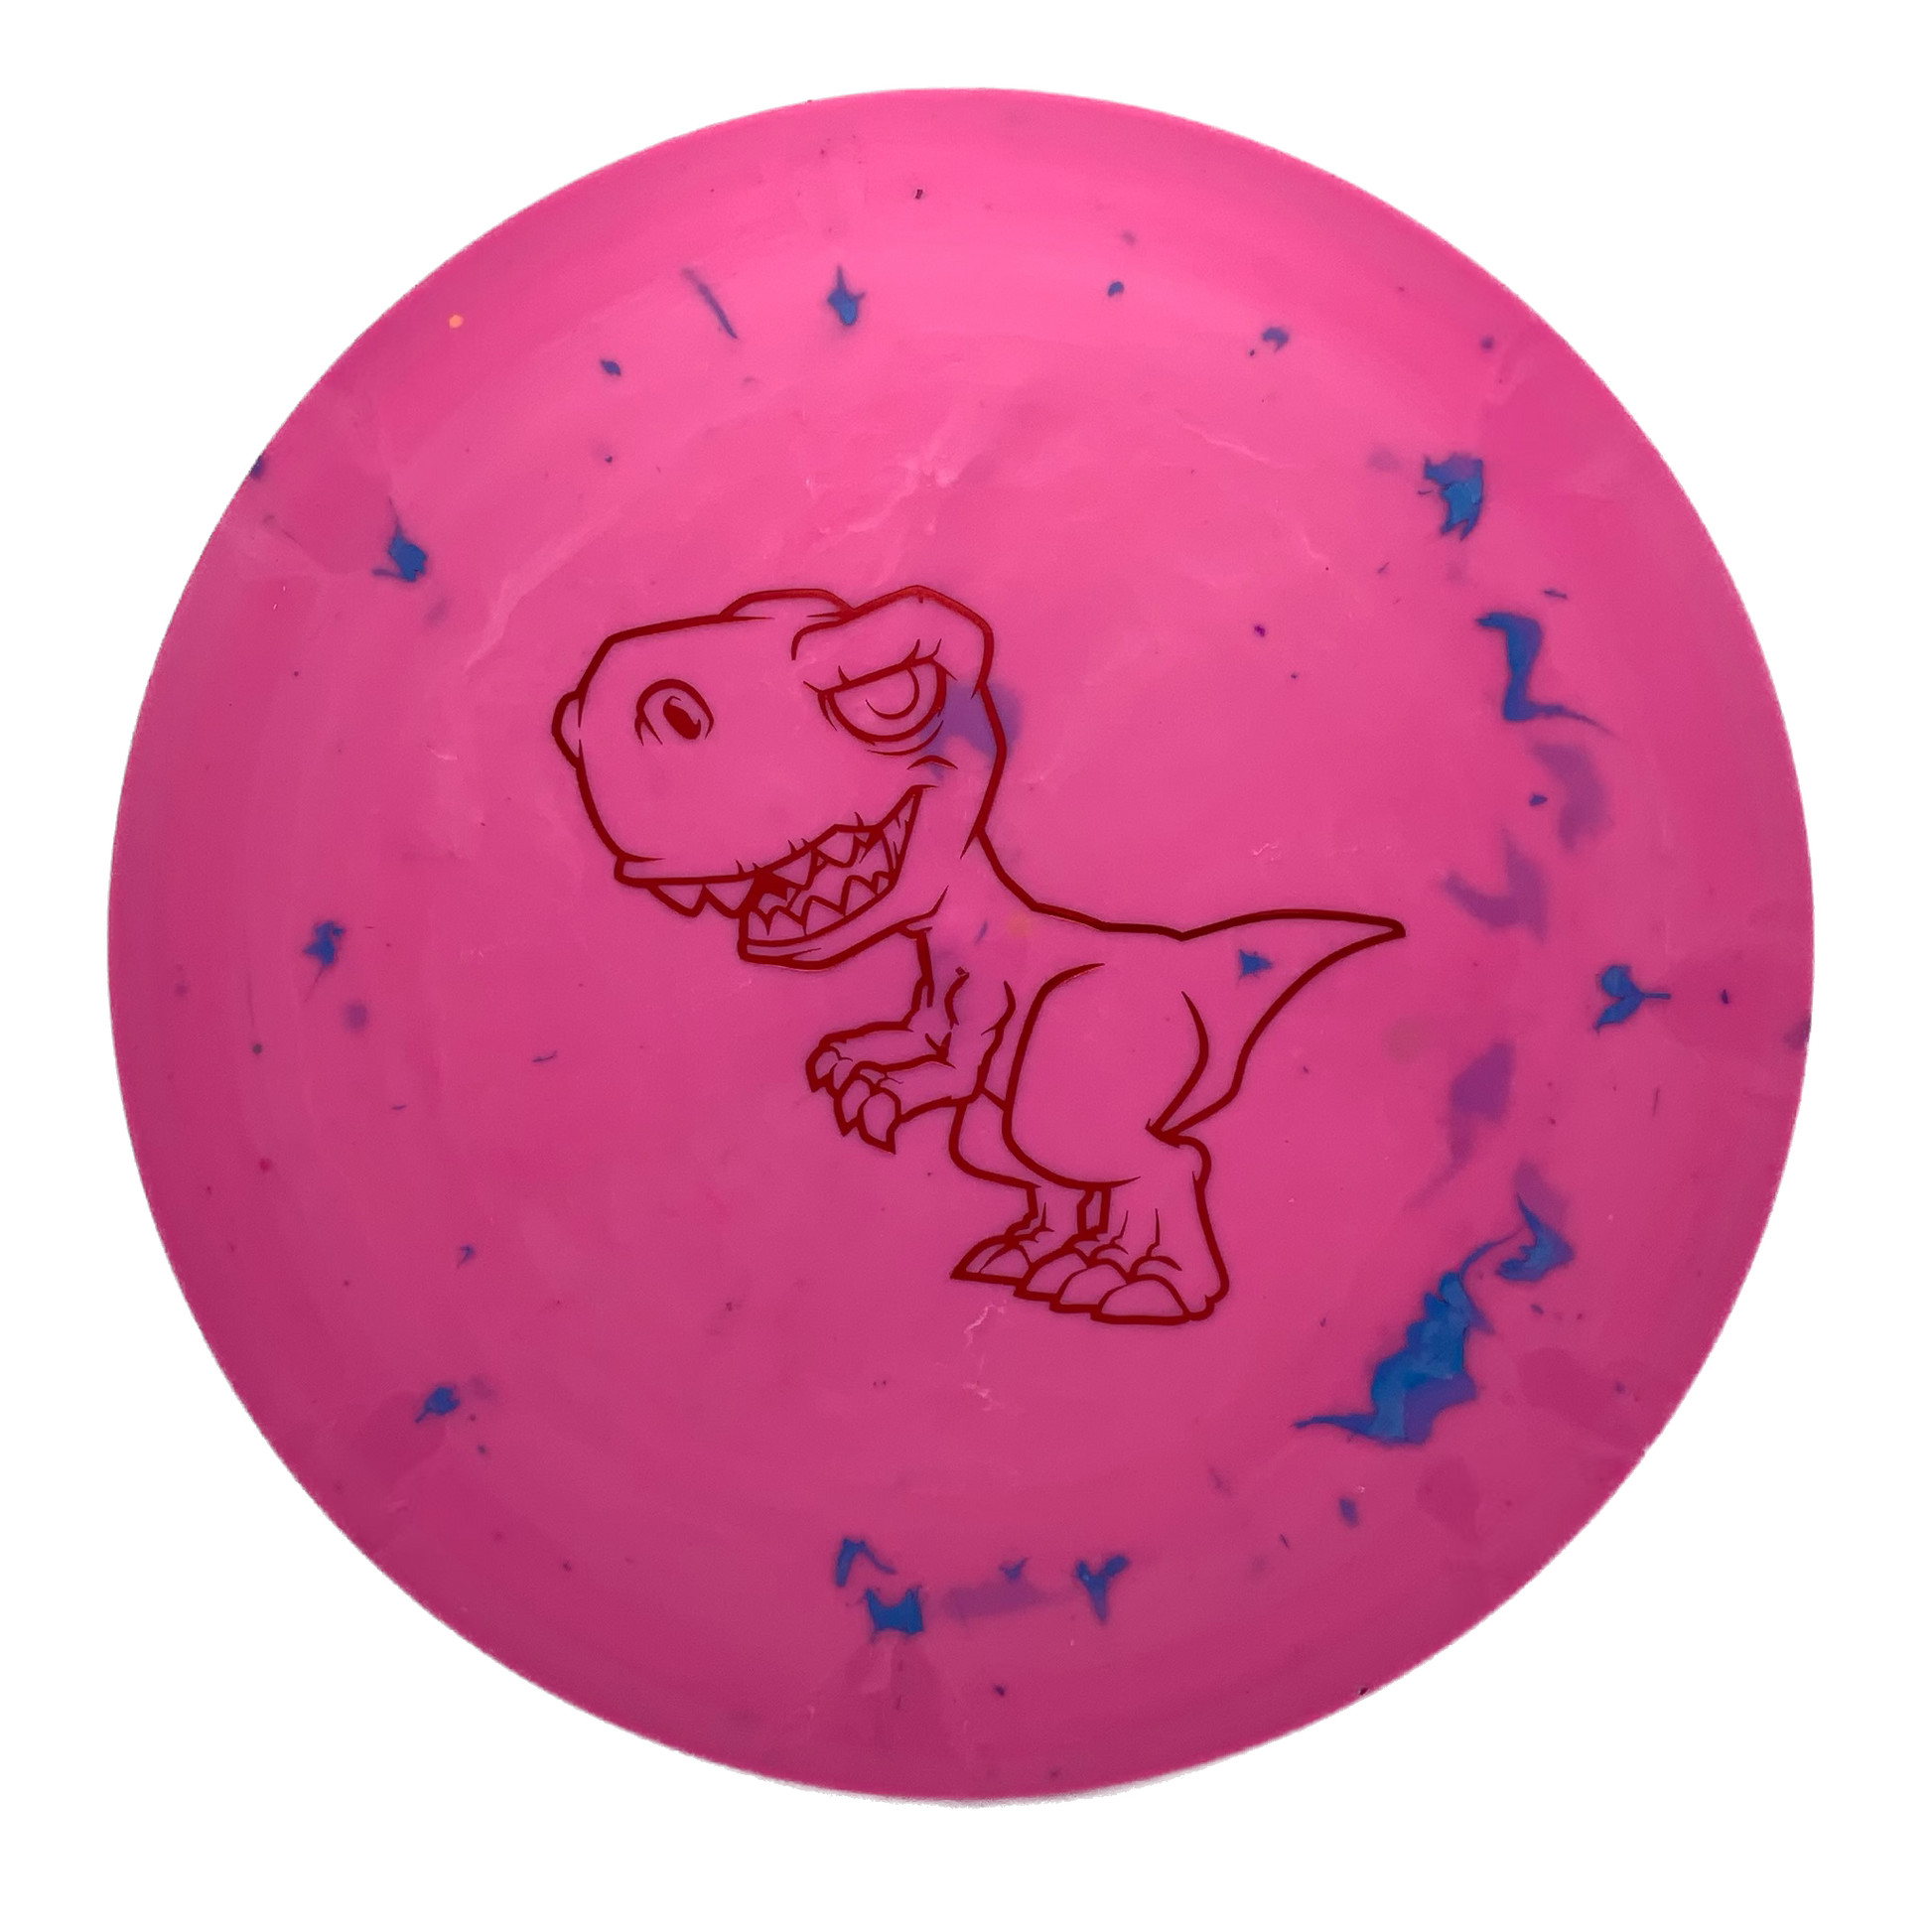 Dino Discs Tyrannosaurus Rex - Astro Discs TX - Houston Disc Golf